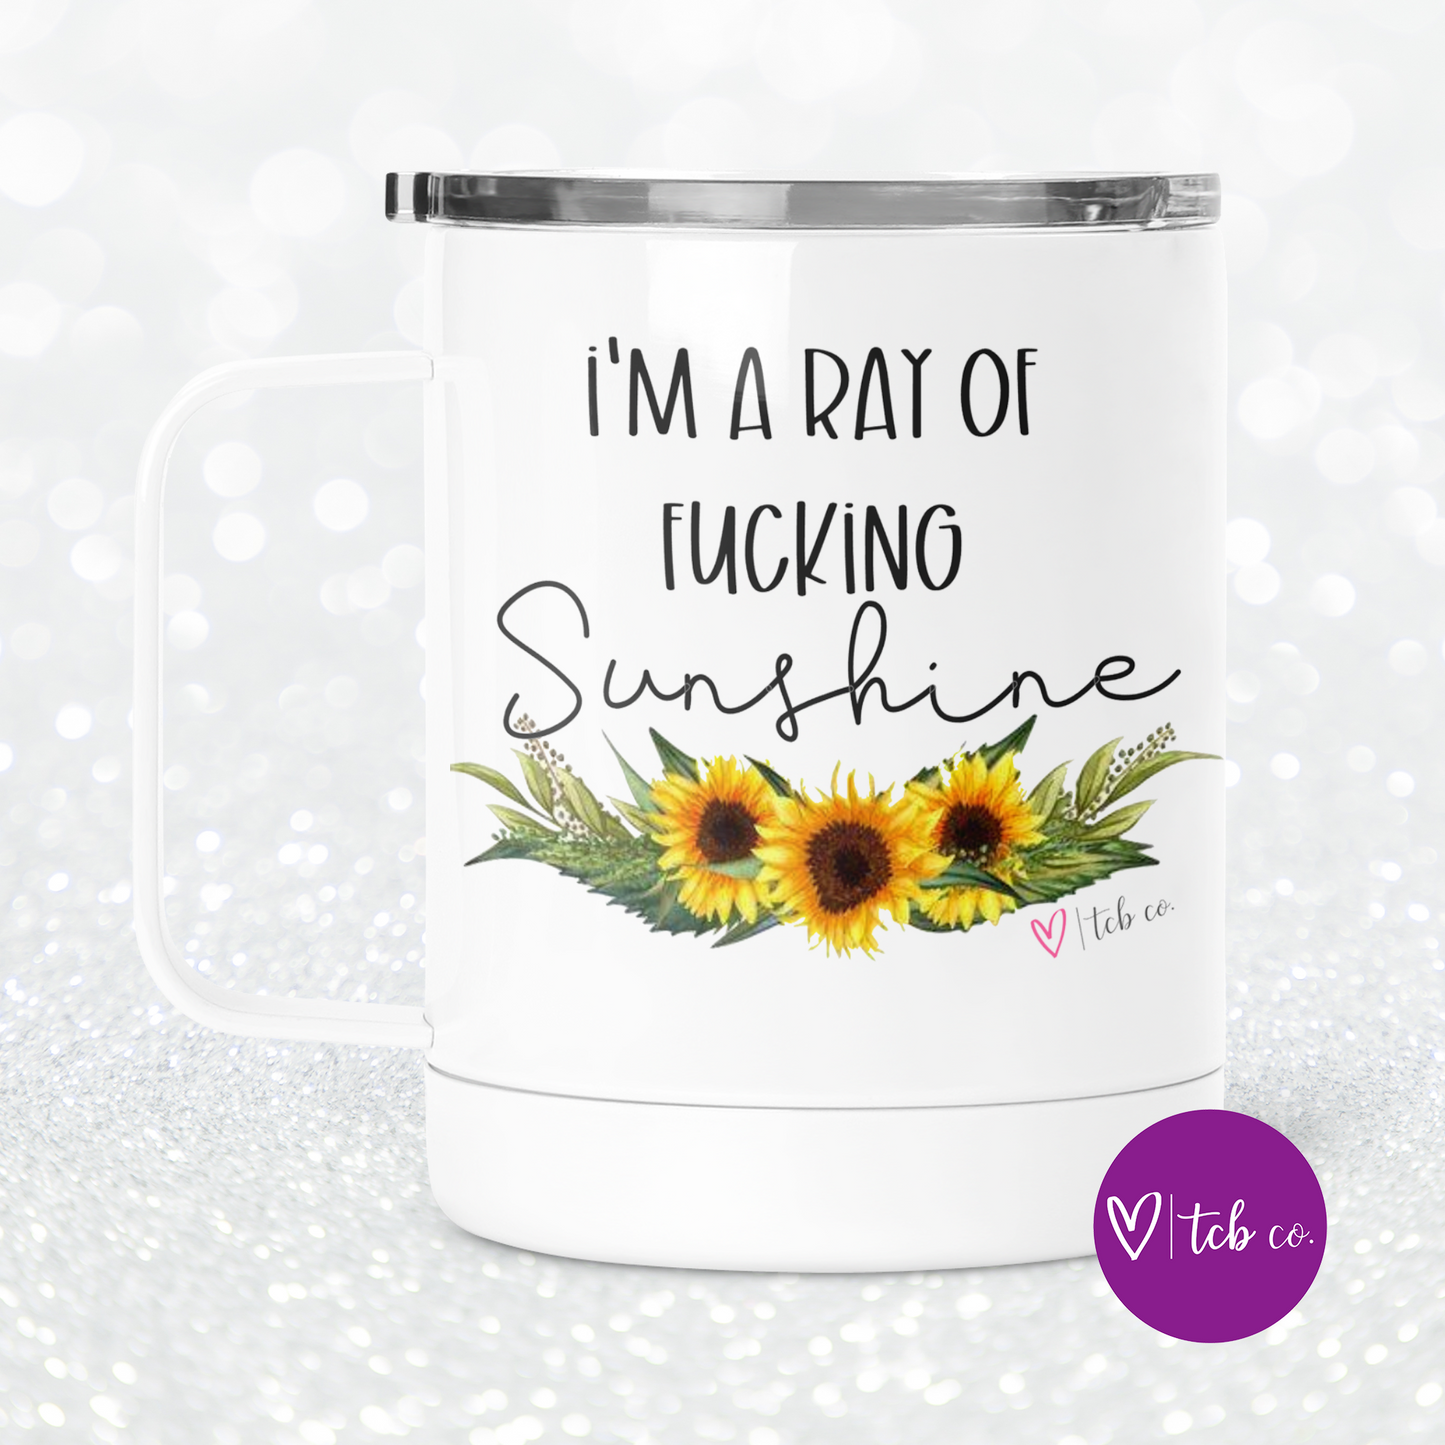 I'm A Ray of Fucking Sunshine Mug With Lid